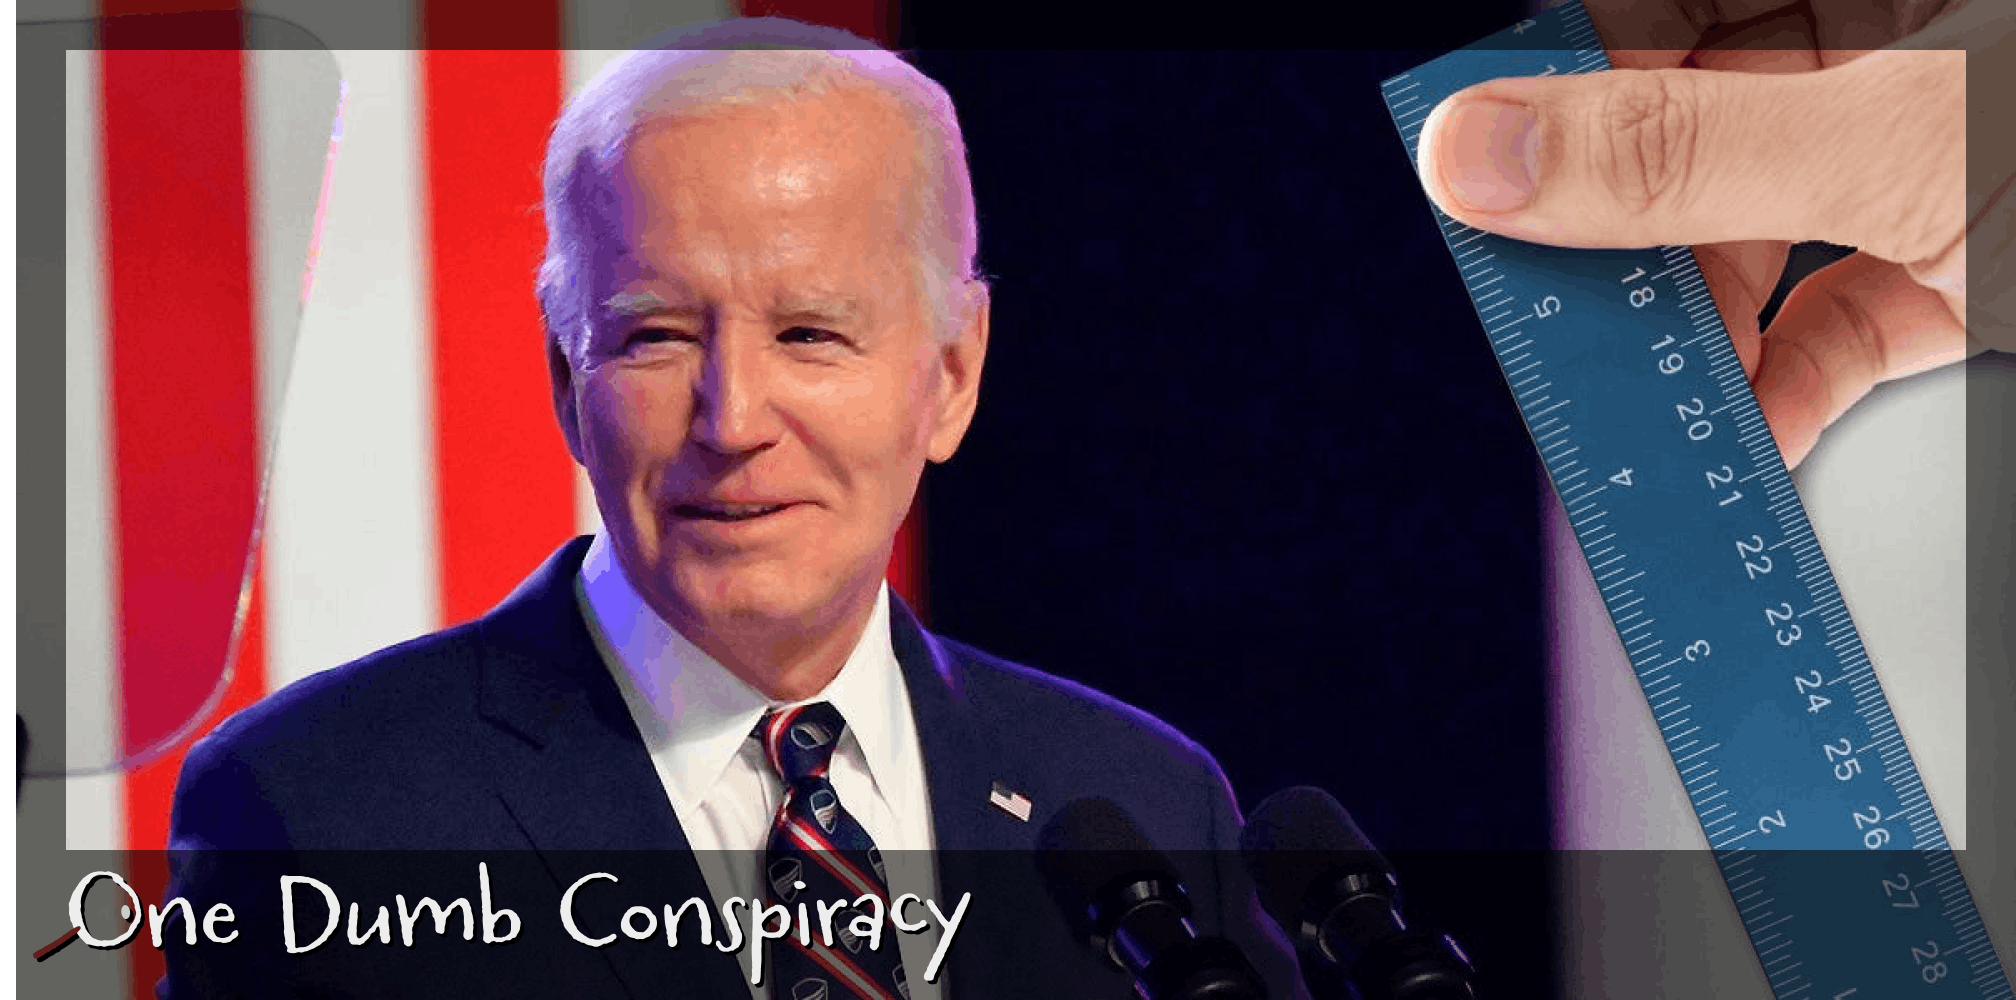 Joe Biden with ruler